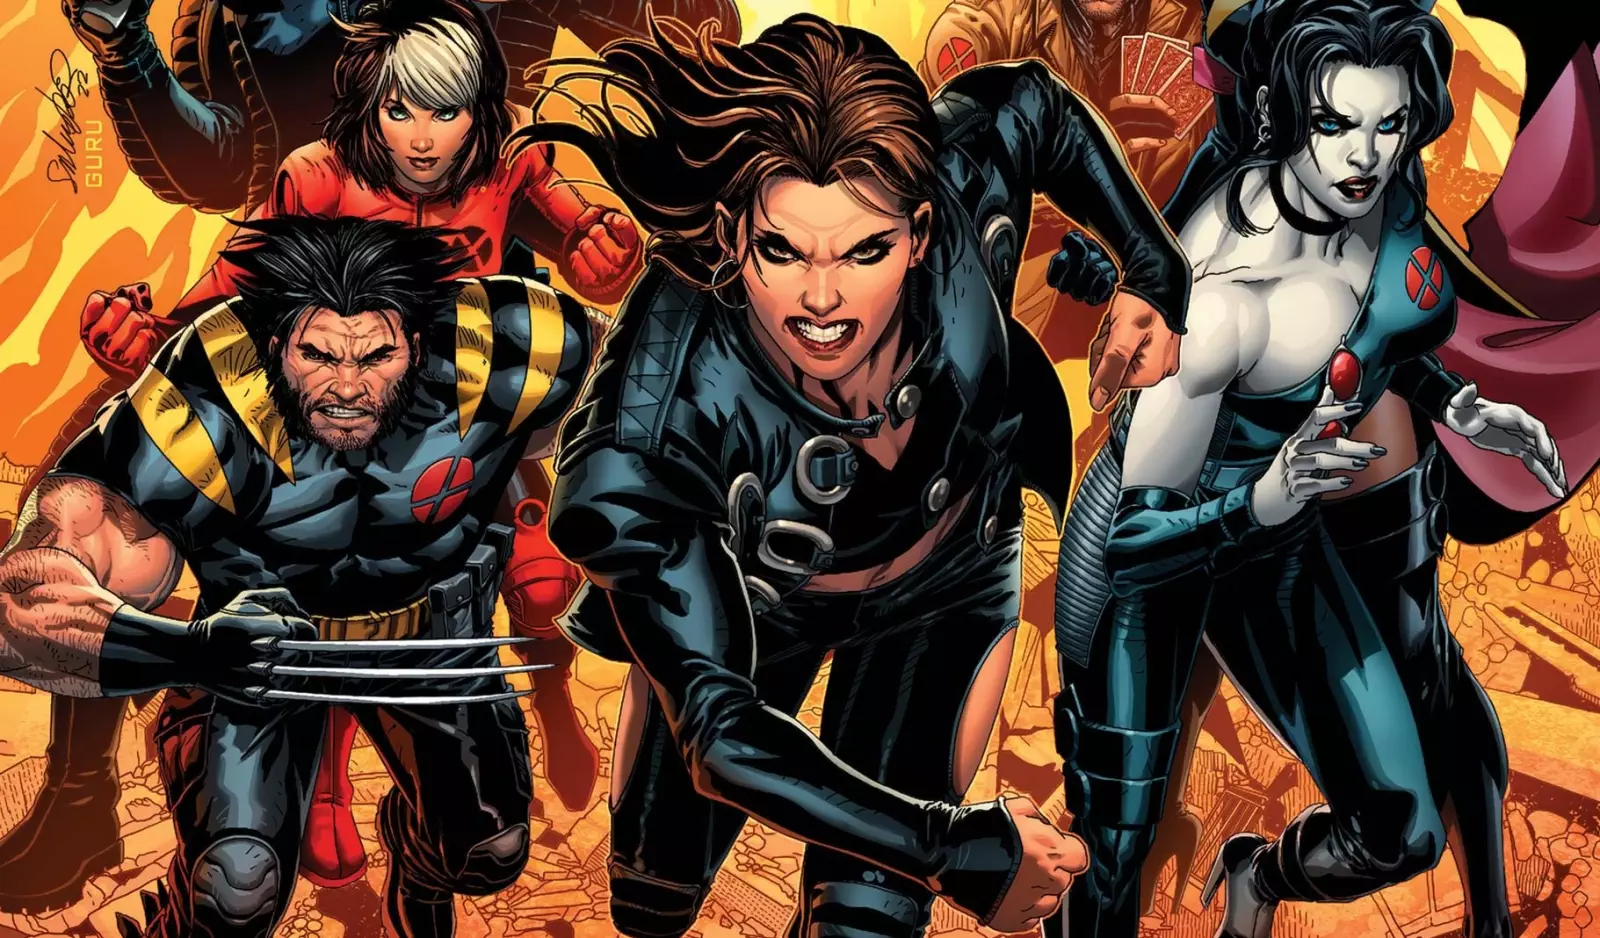 X-Treme X-Men #1 - Comic Book Preview